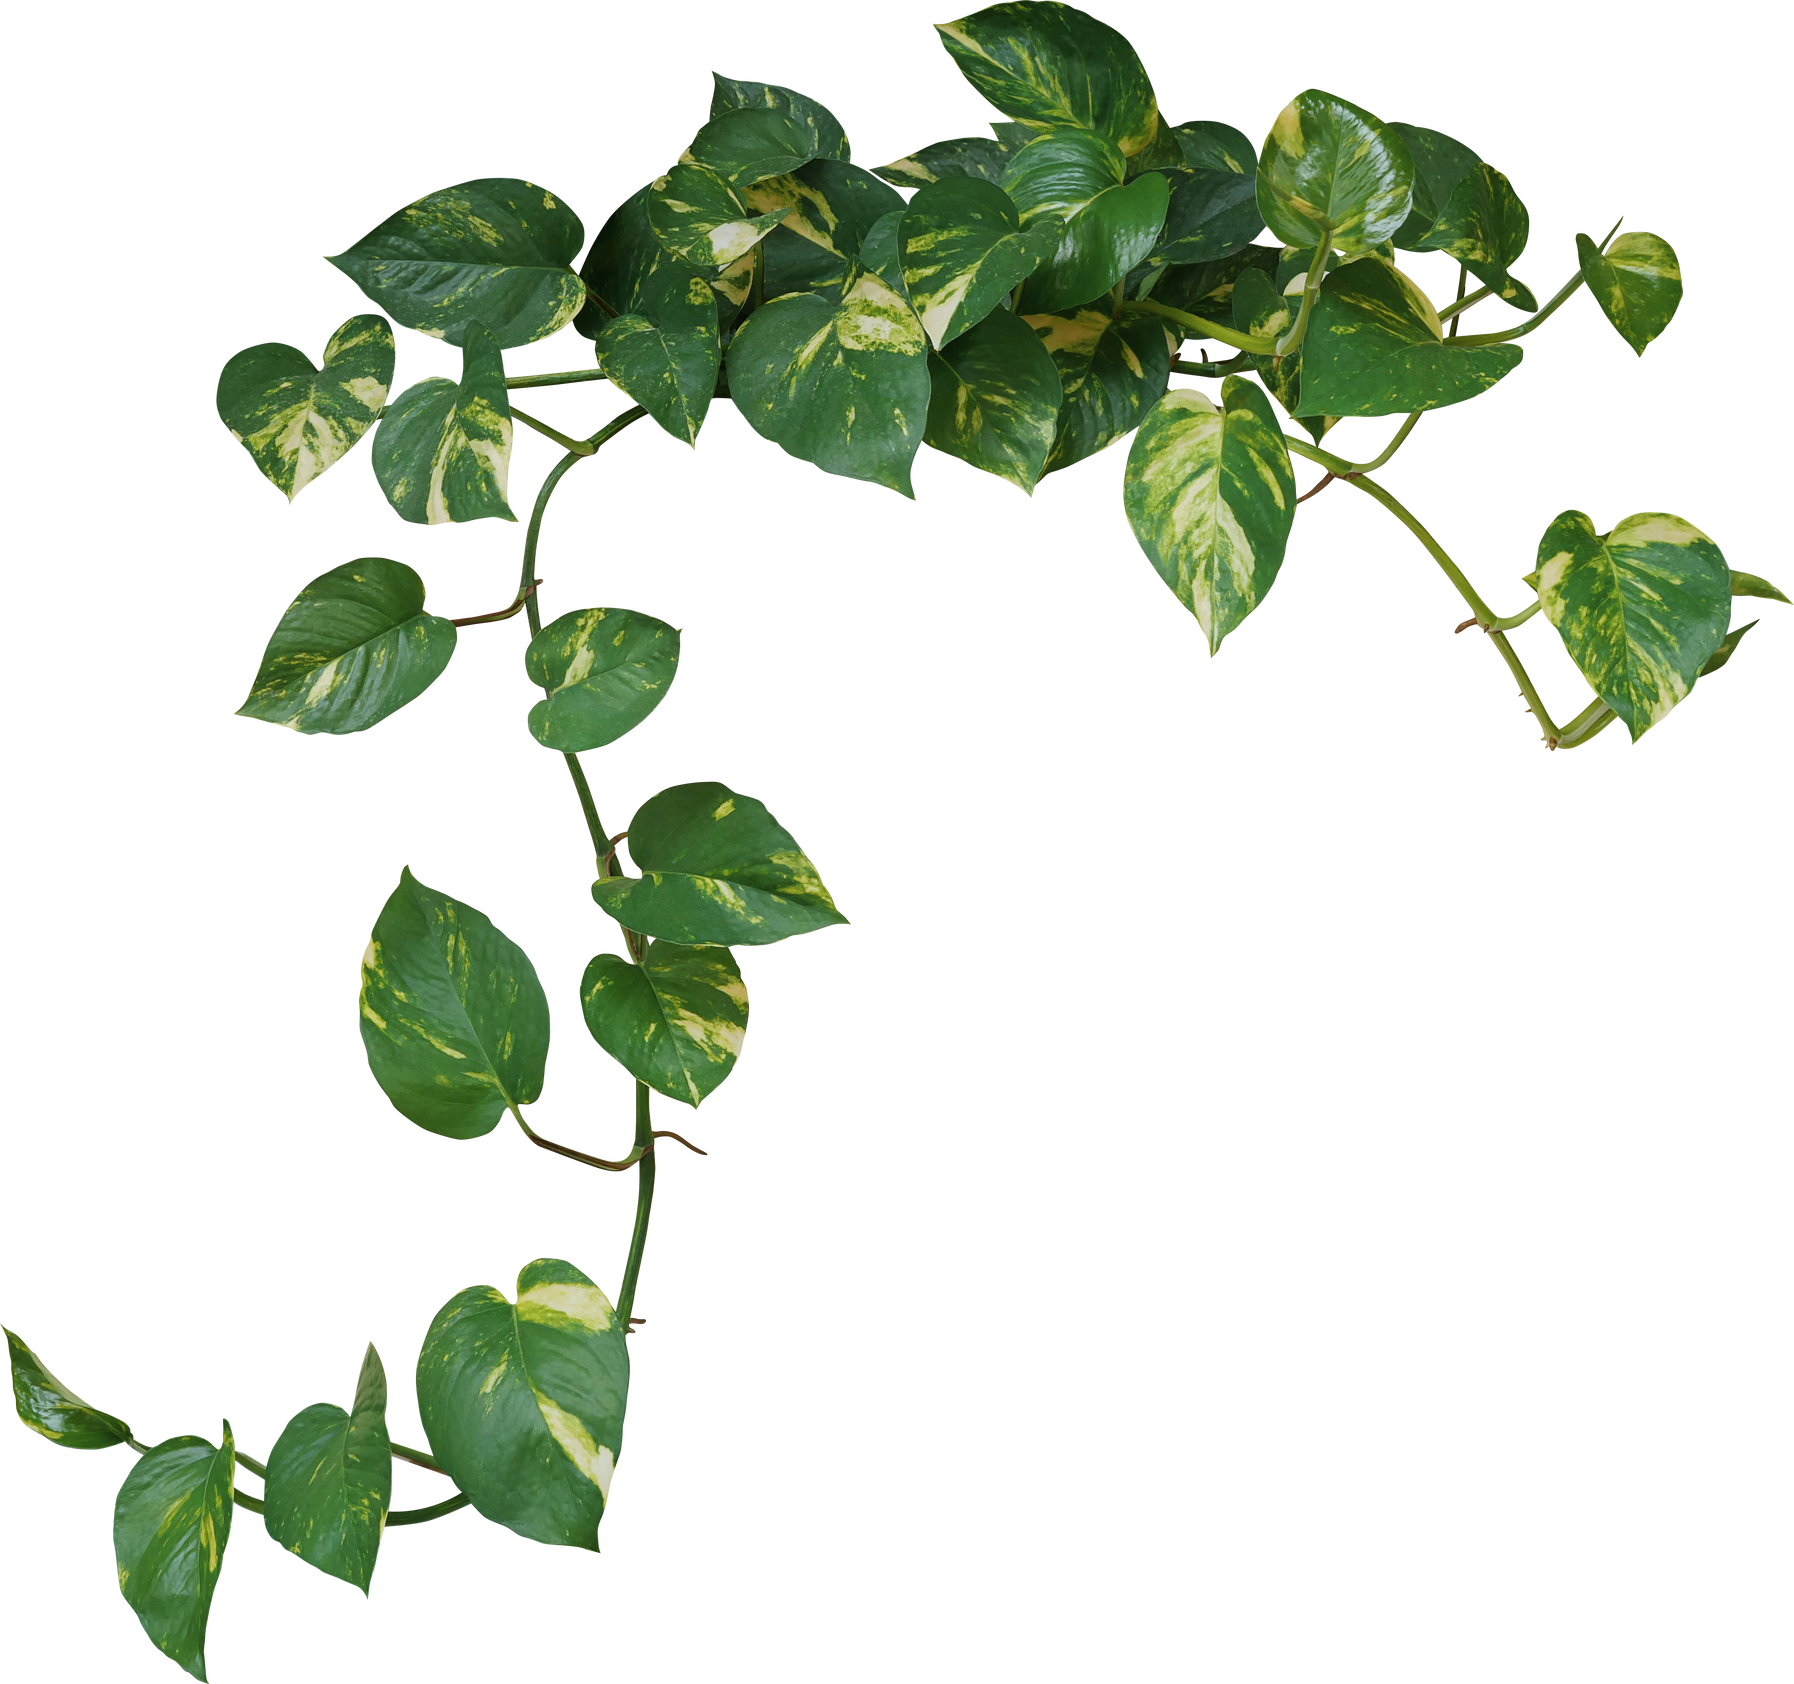 Heart shaped green variegated leave hanging vine plant bush of devil’s ivy or golden pothos (Epipremnum aureum) popular foliage tropical houseplant